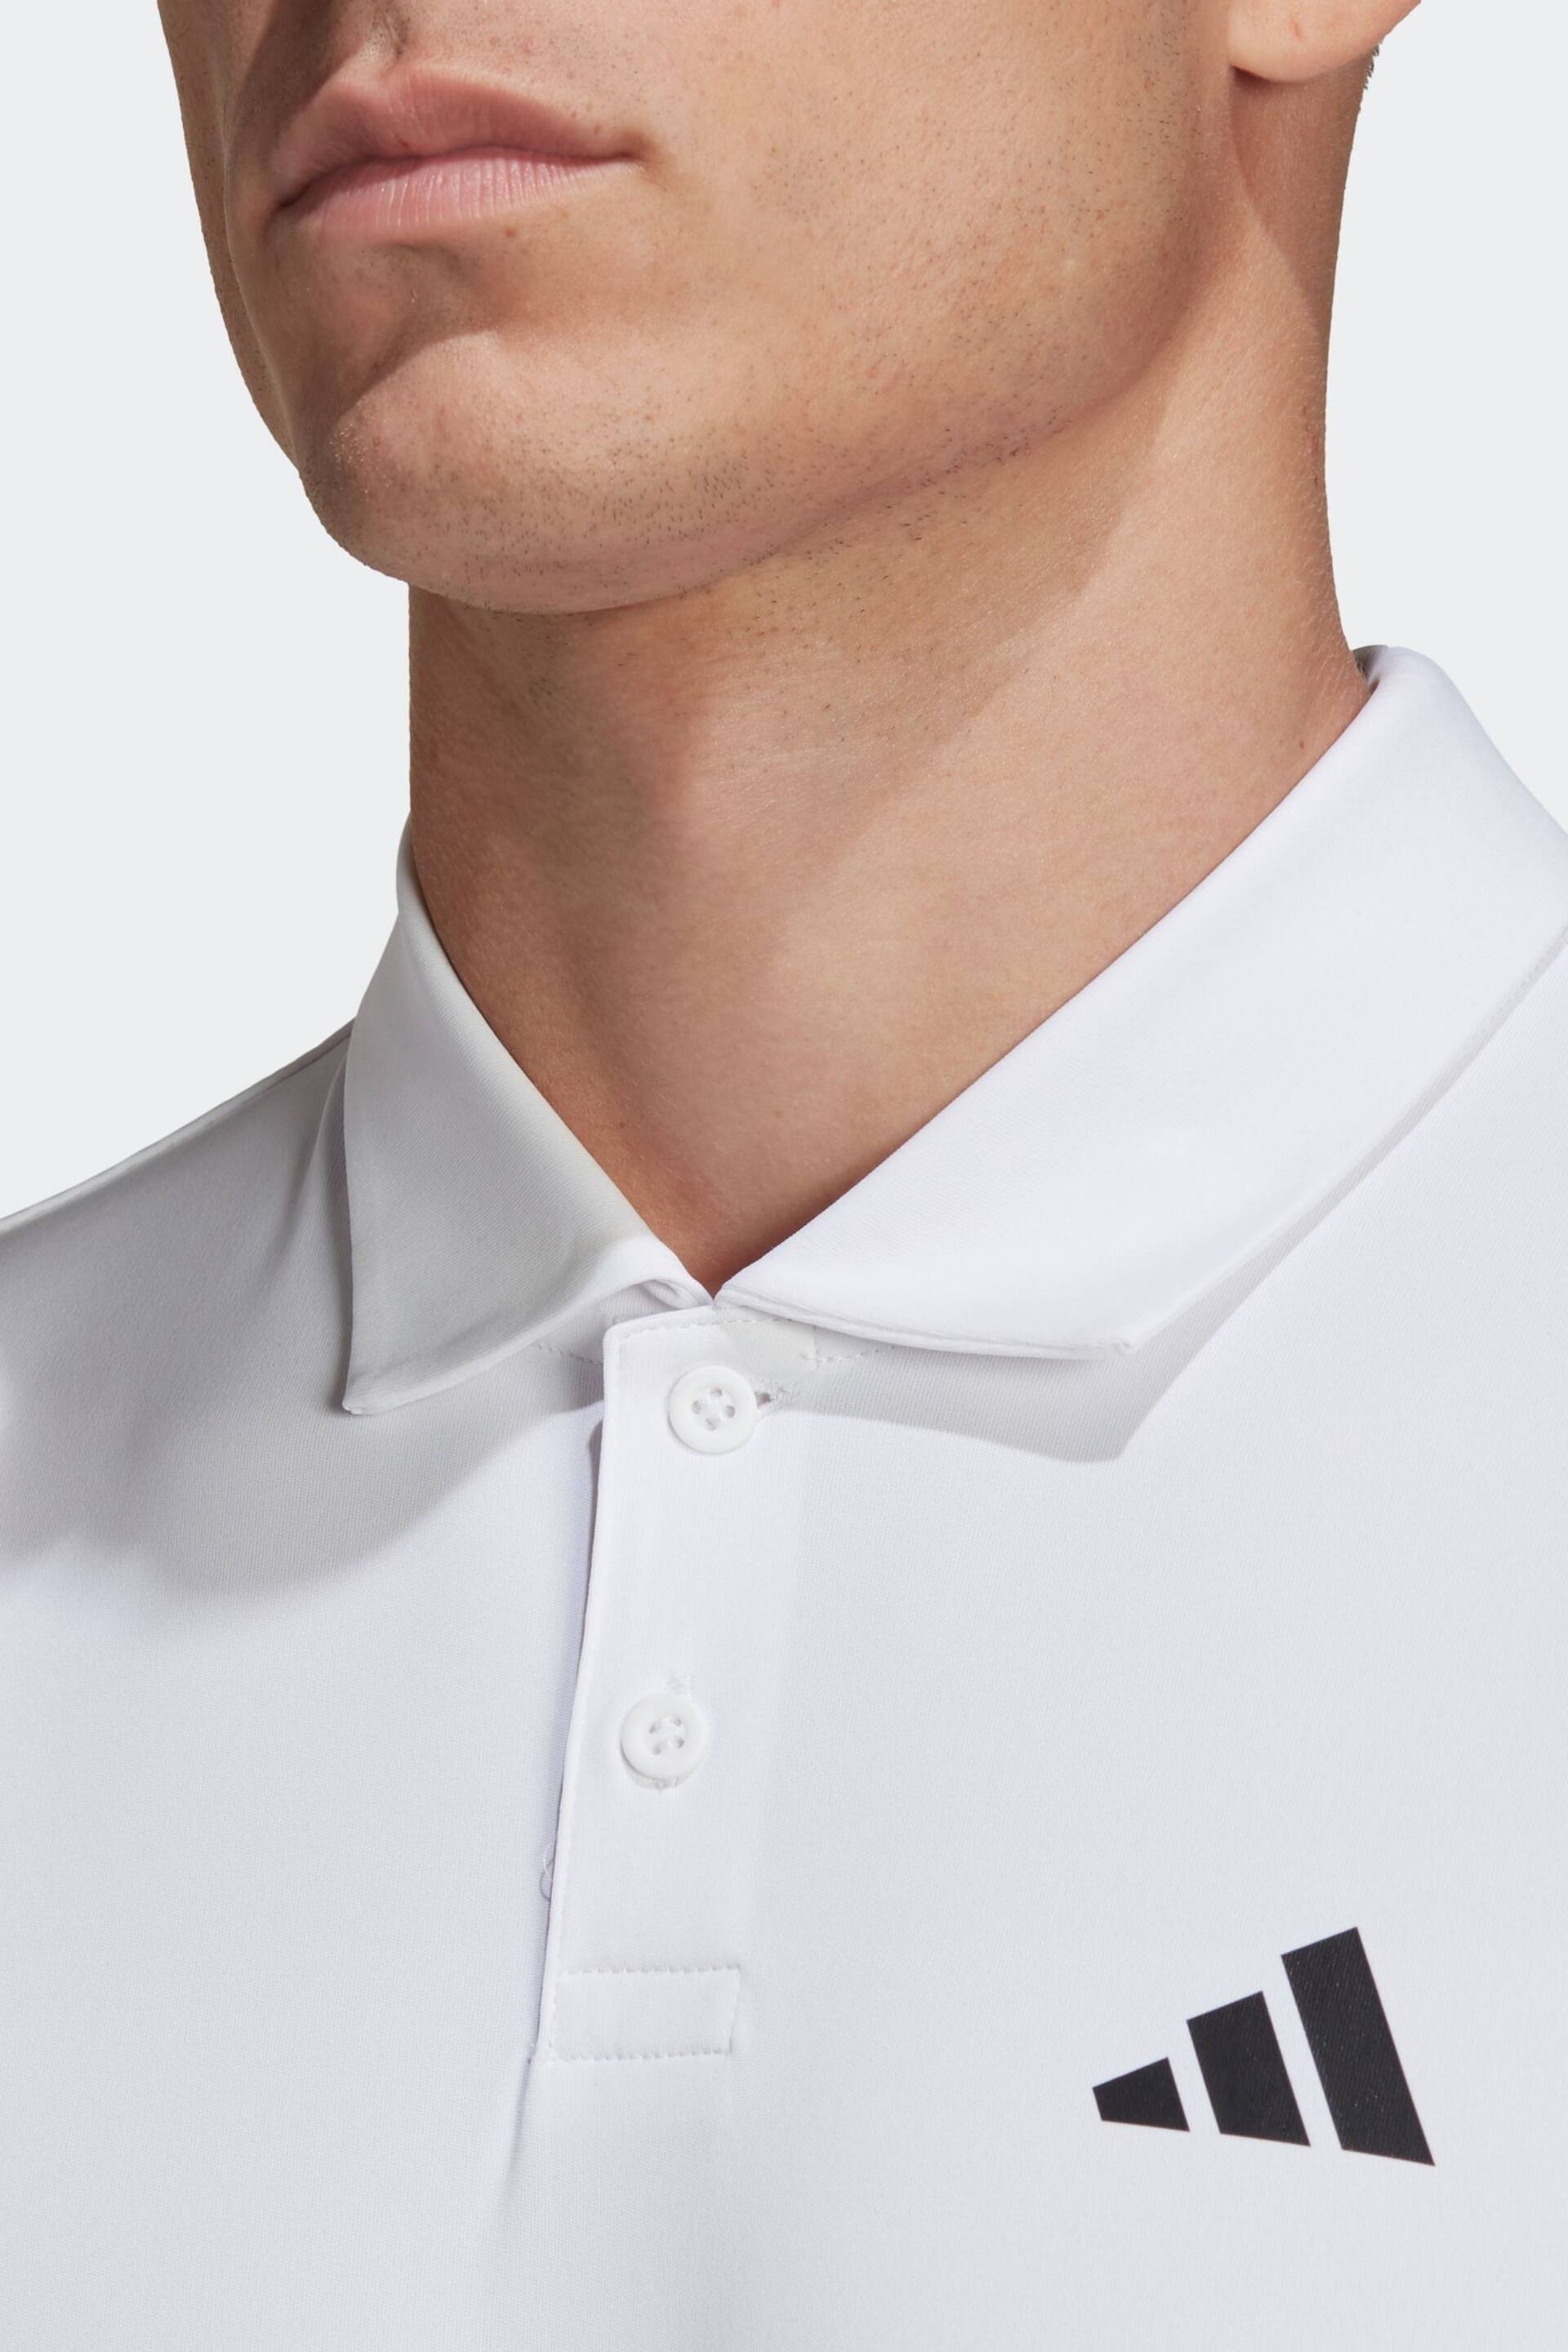 adidas White Club 3-Stripes Tennis Polo Shirt - Image 5 of 7